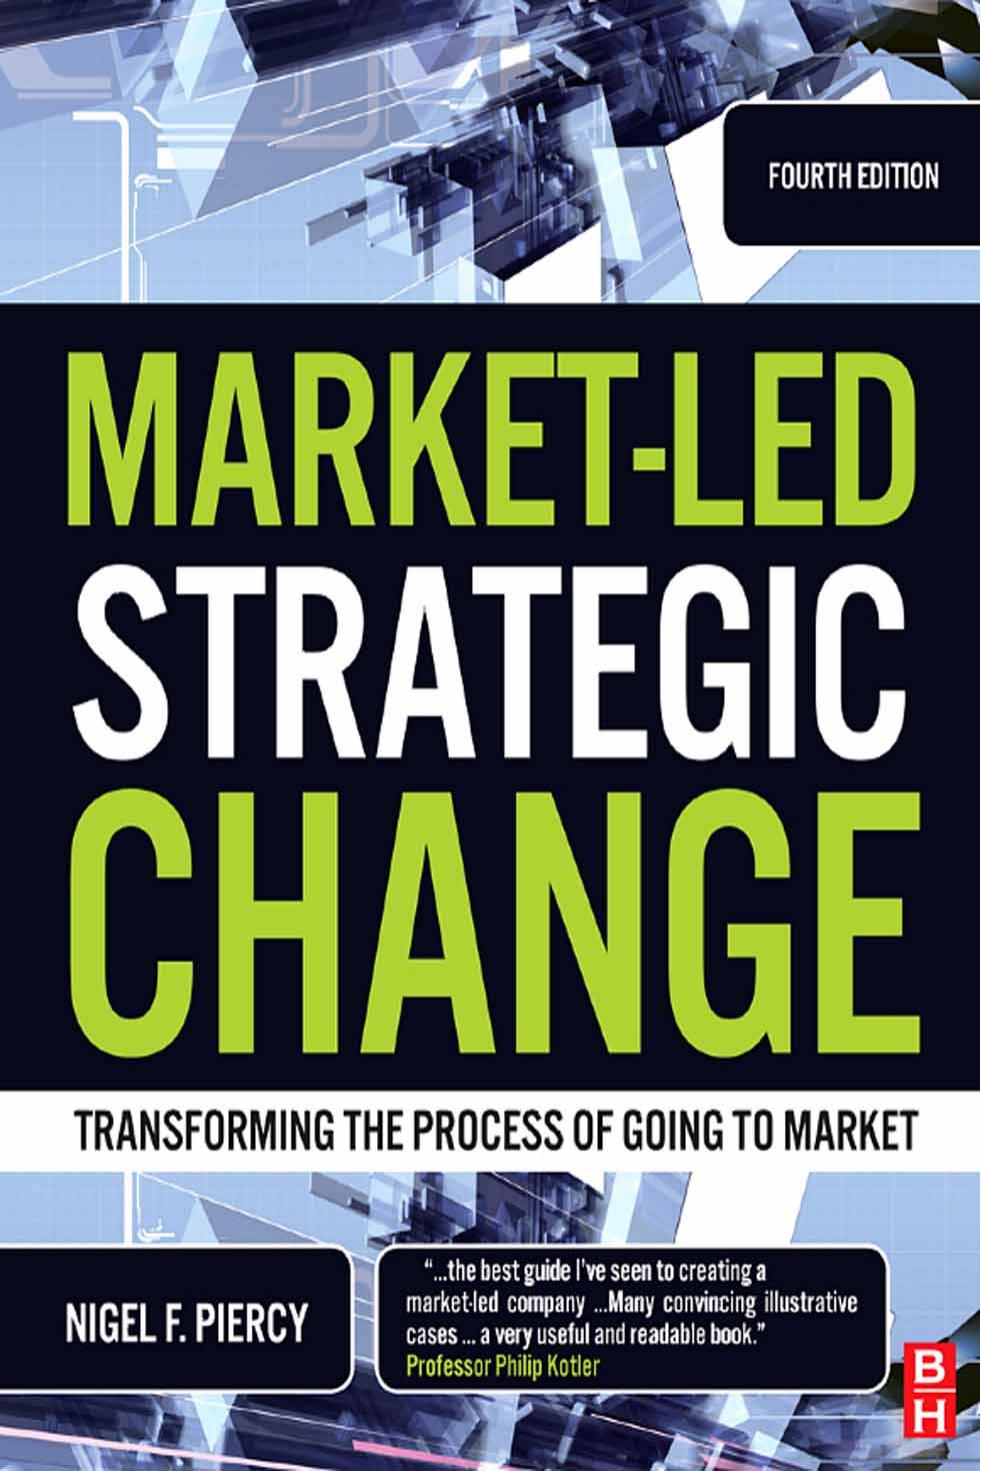 Market-Led Strategic Change, Fourth Edition